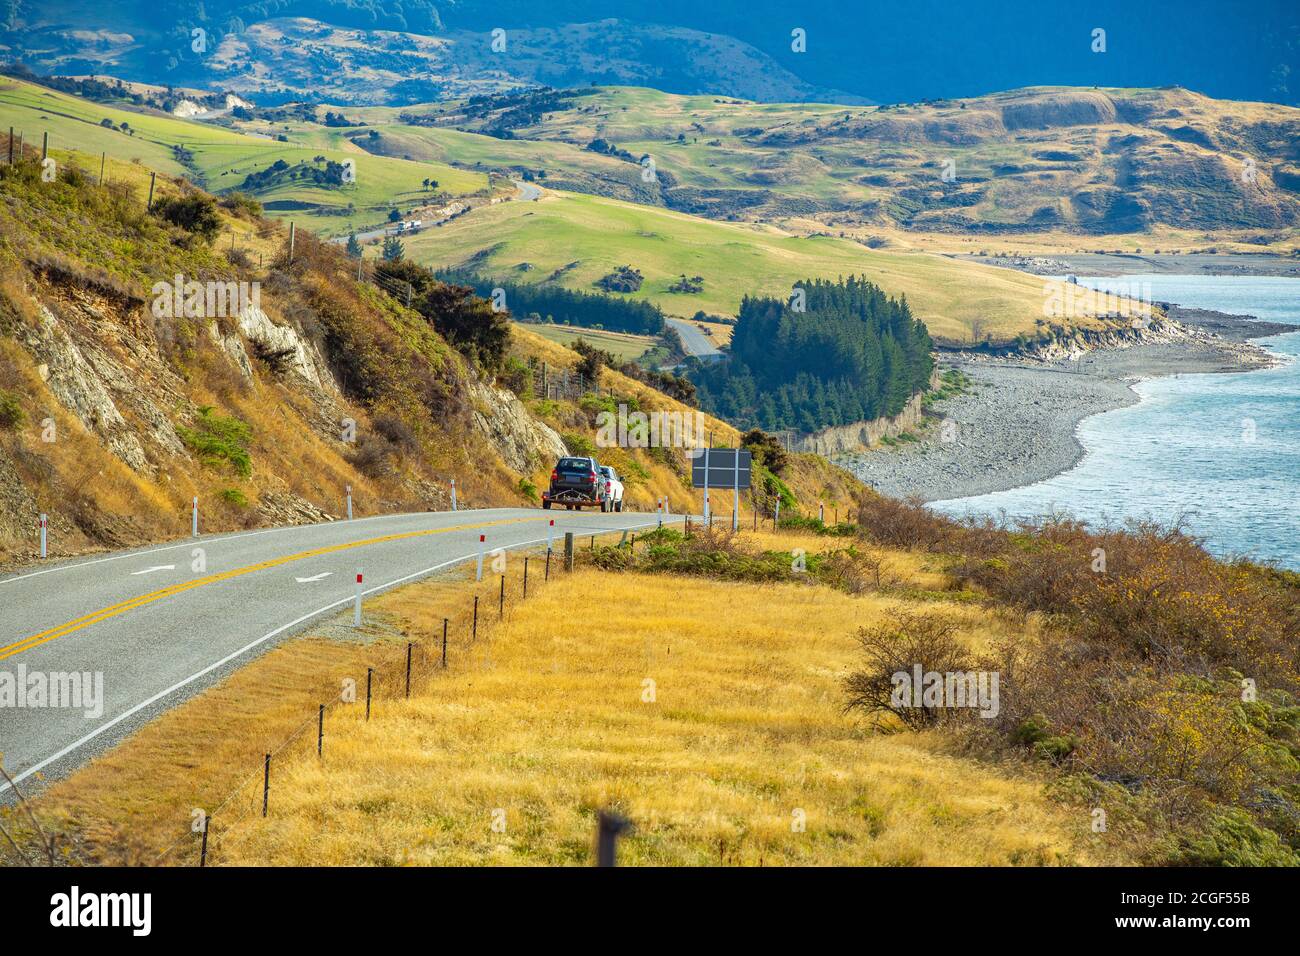 Spektakuläre Aussicht auf Peter's Lookout, mit Blick auf Mount Cook und Lake Pukaki in Neuseeland. Stockfoto